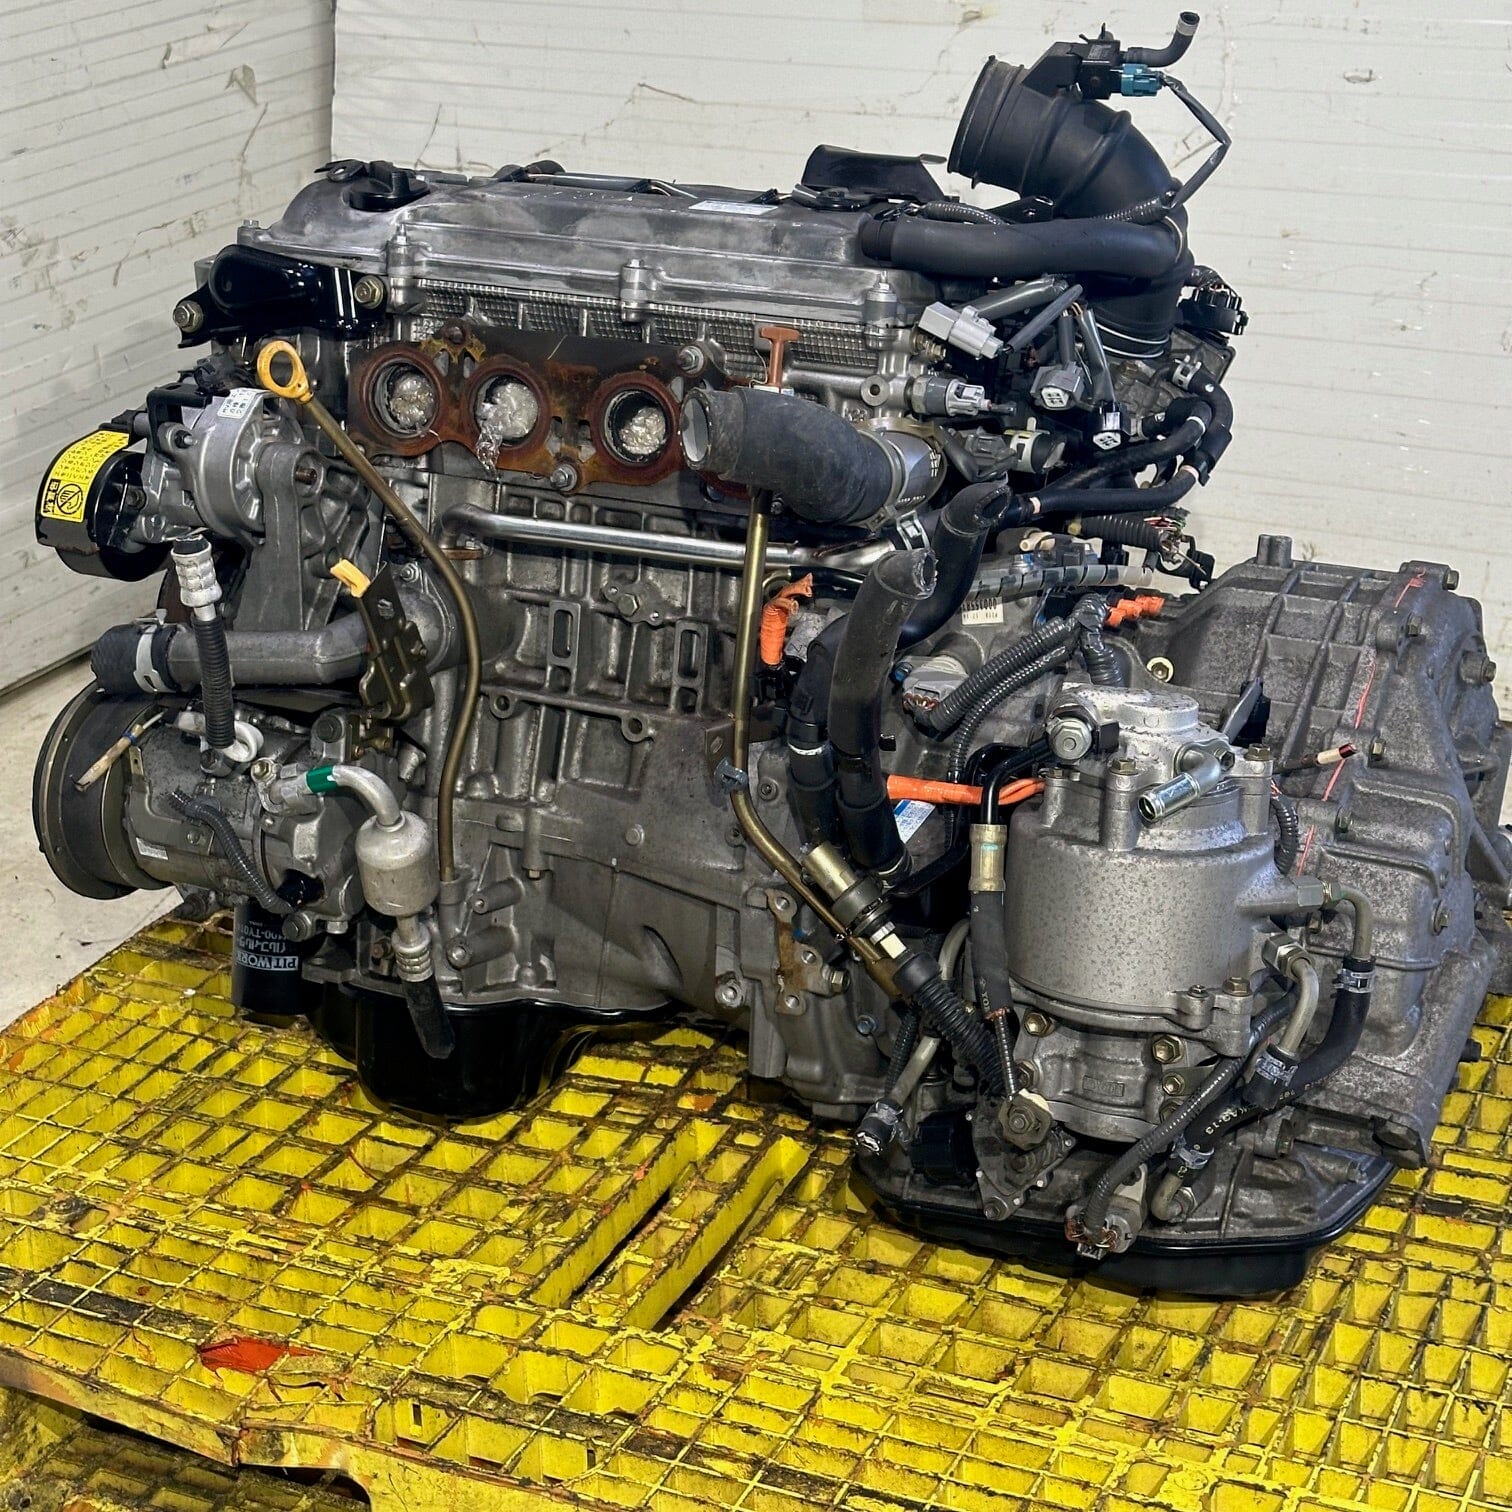 Toyota Alphard Estima 2.4L Hybrid JDM Engine Automatic Transmission - 2AZ-FXE Hybrid Motor Vehicle Engines Low Mile JDM 